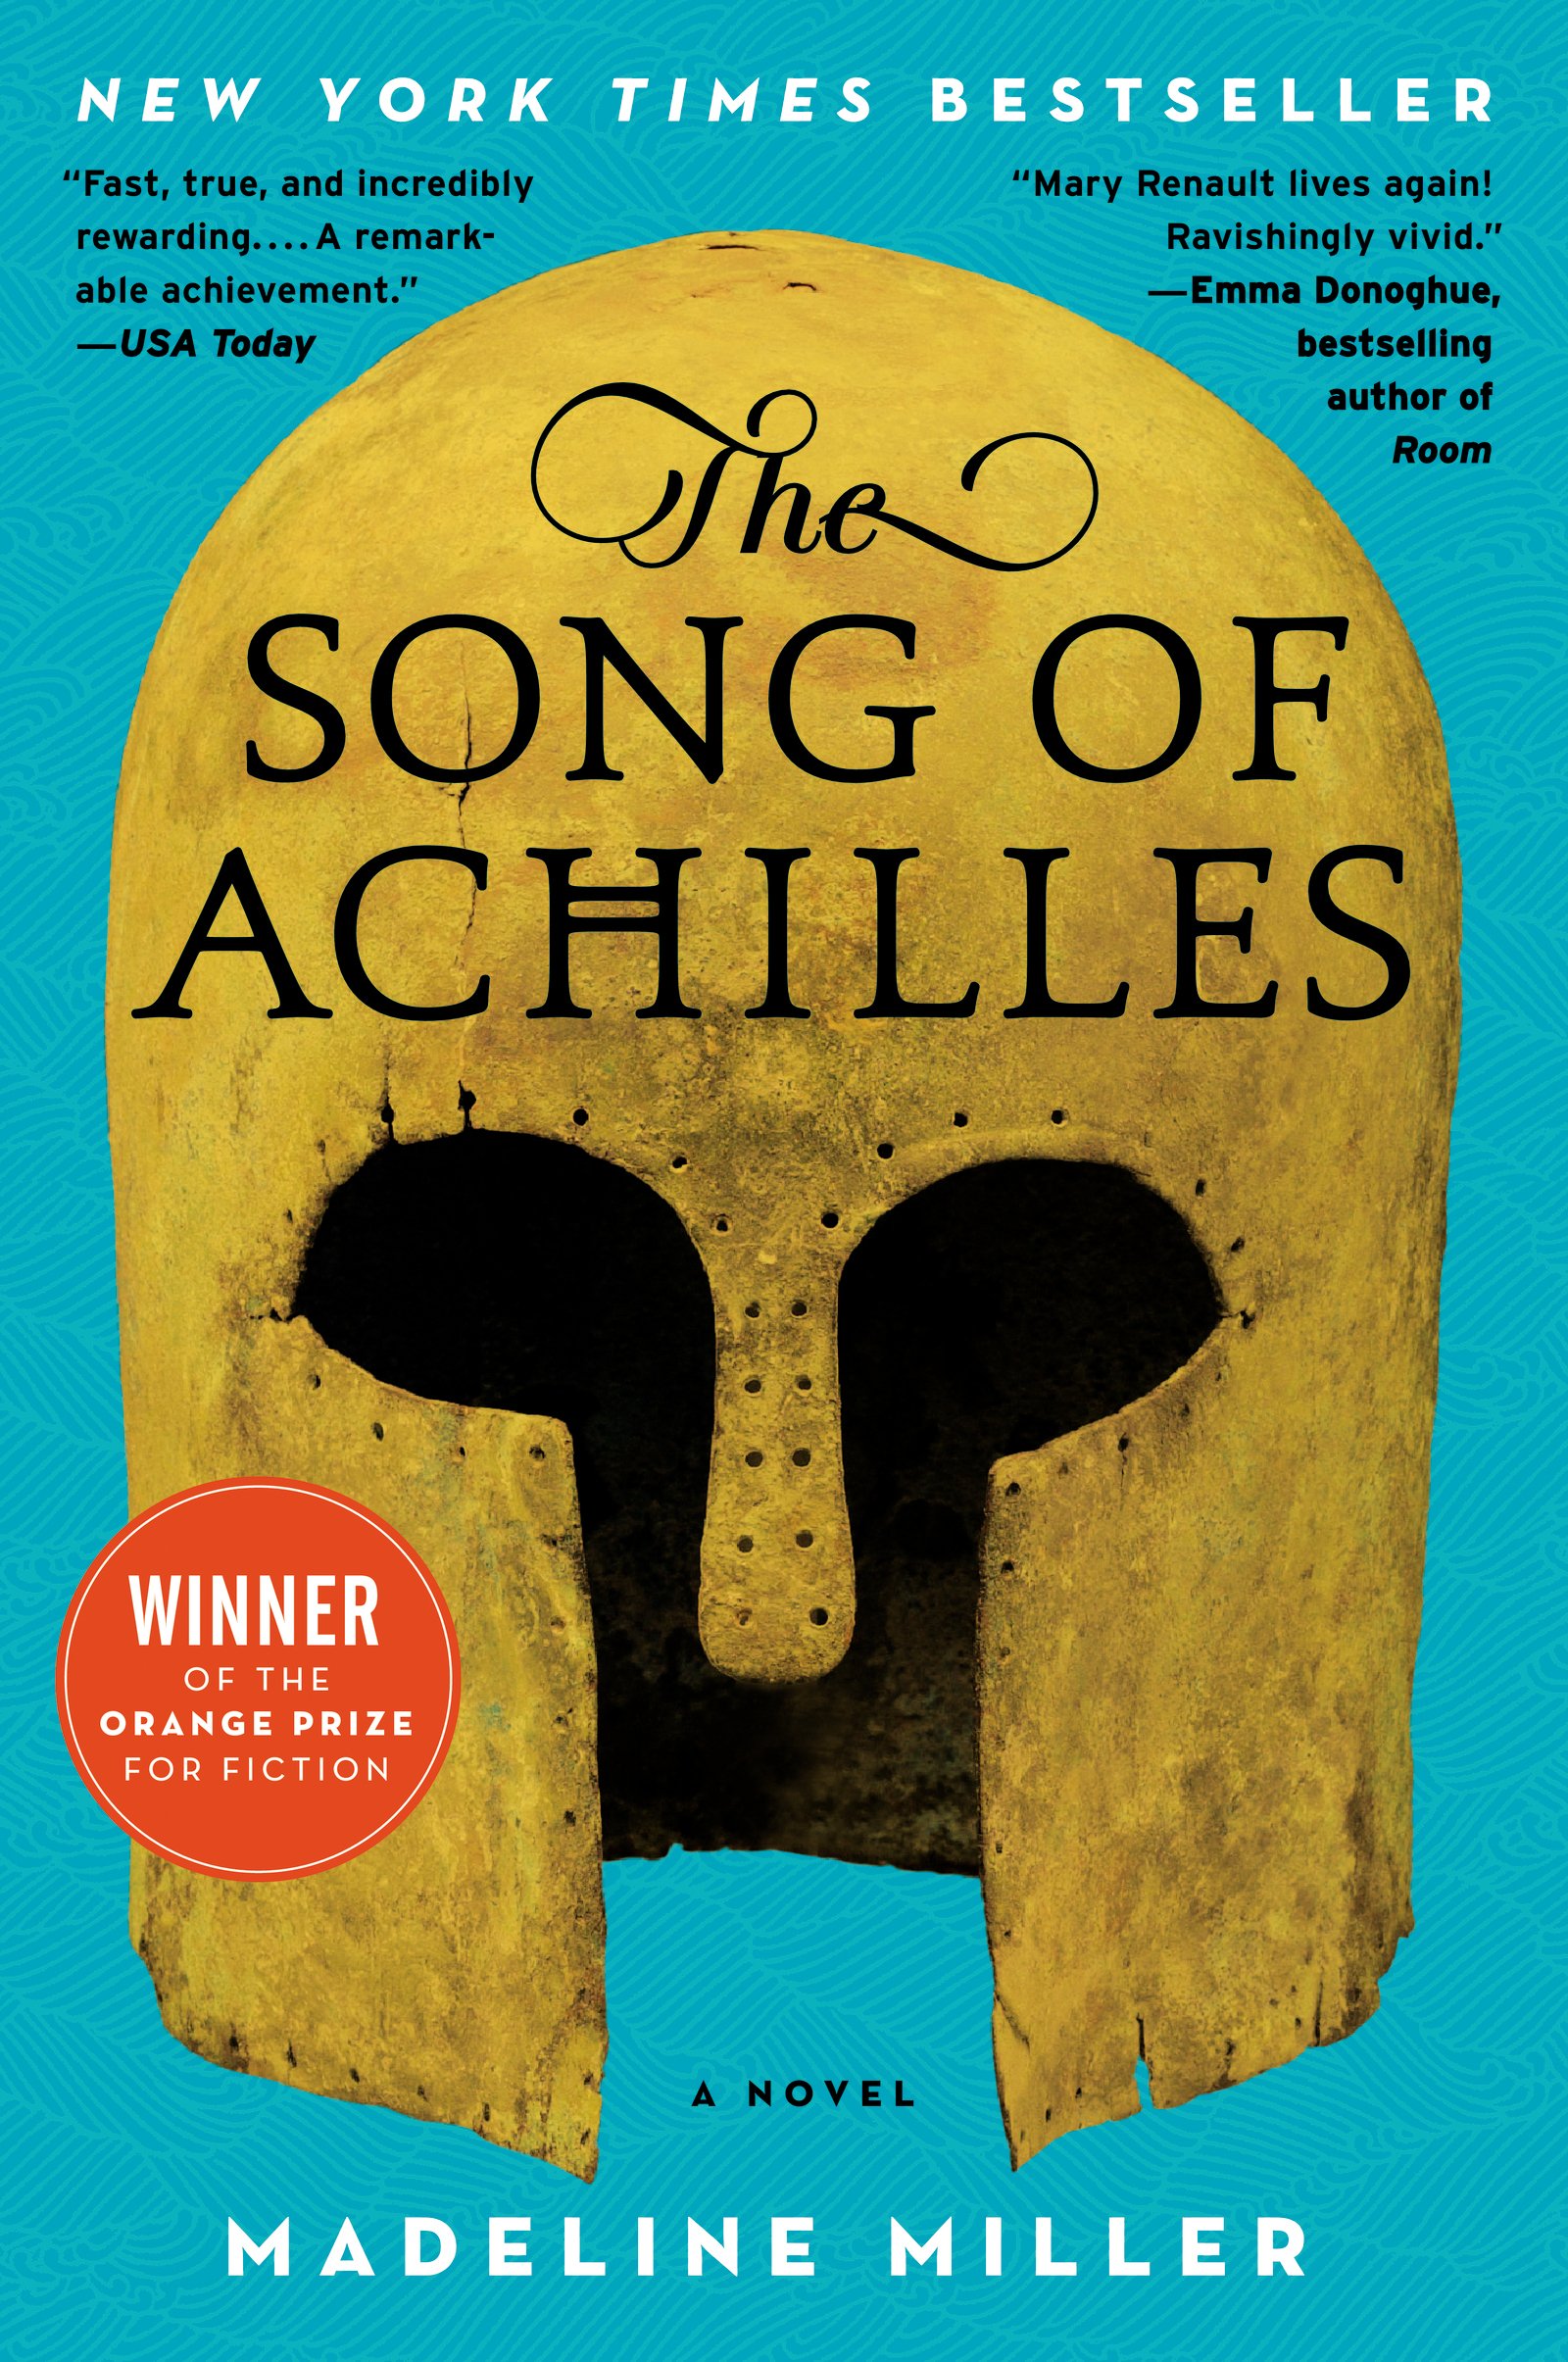 View description for 'Song of Achilles'